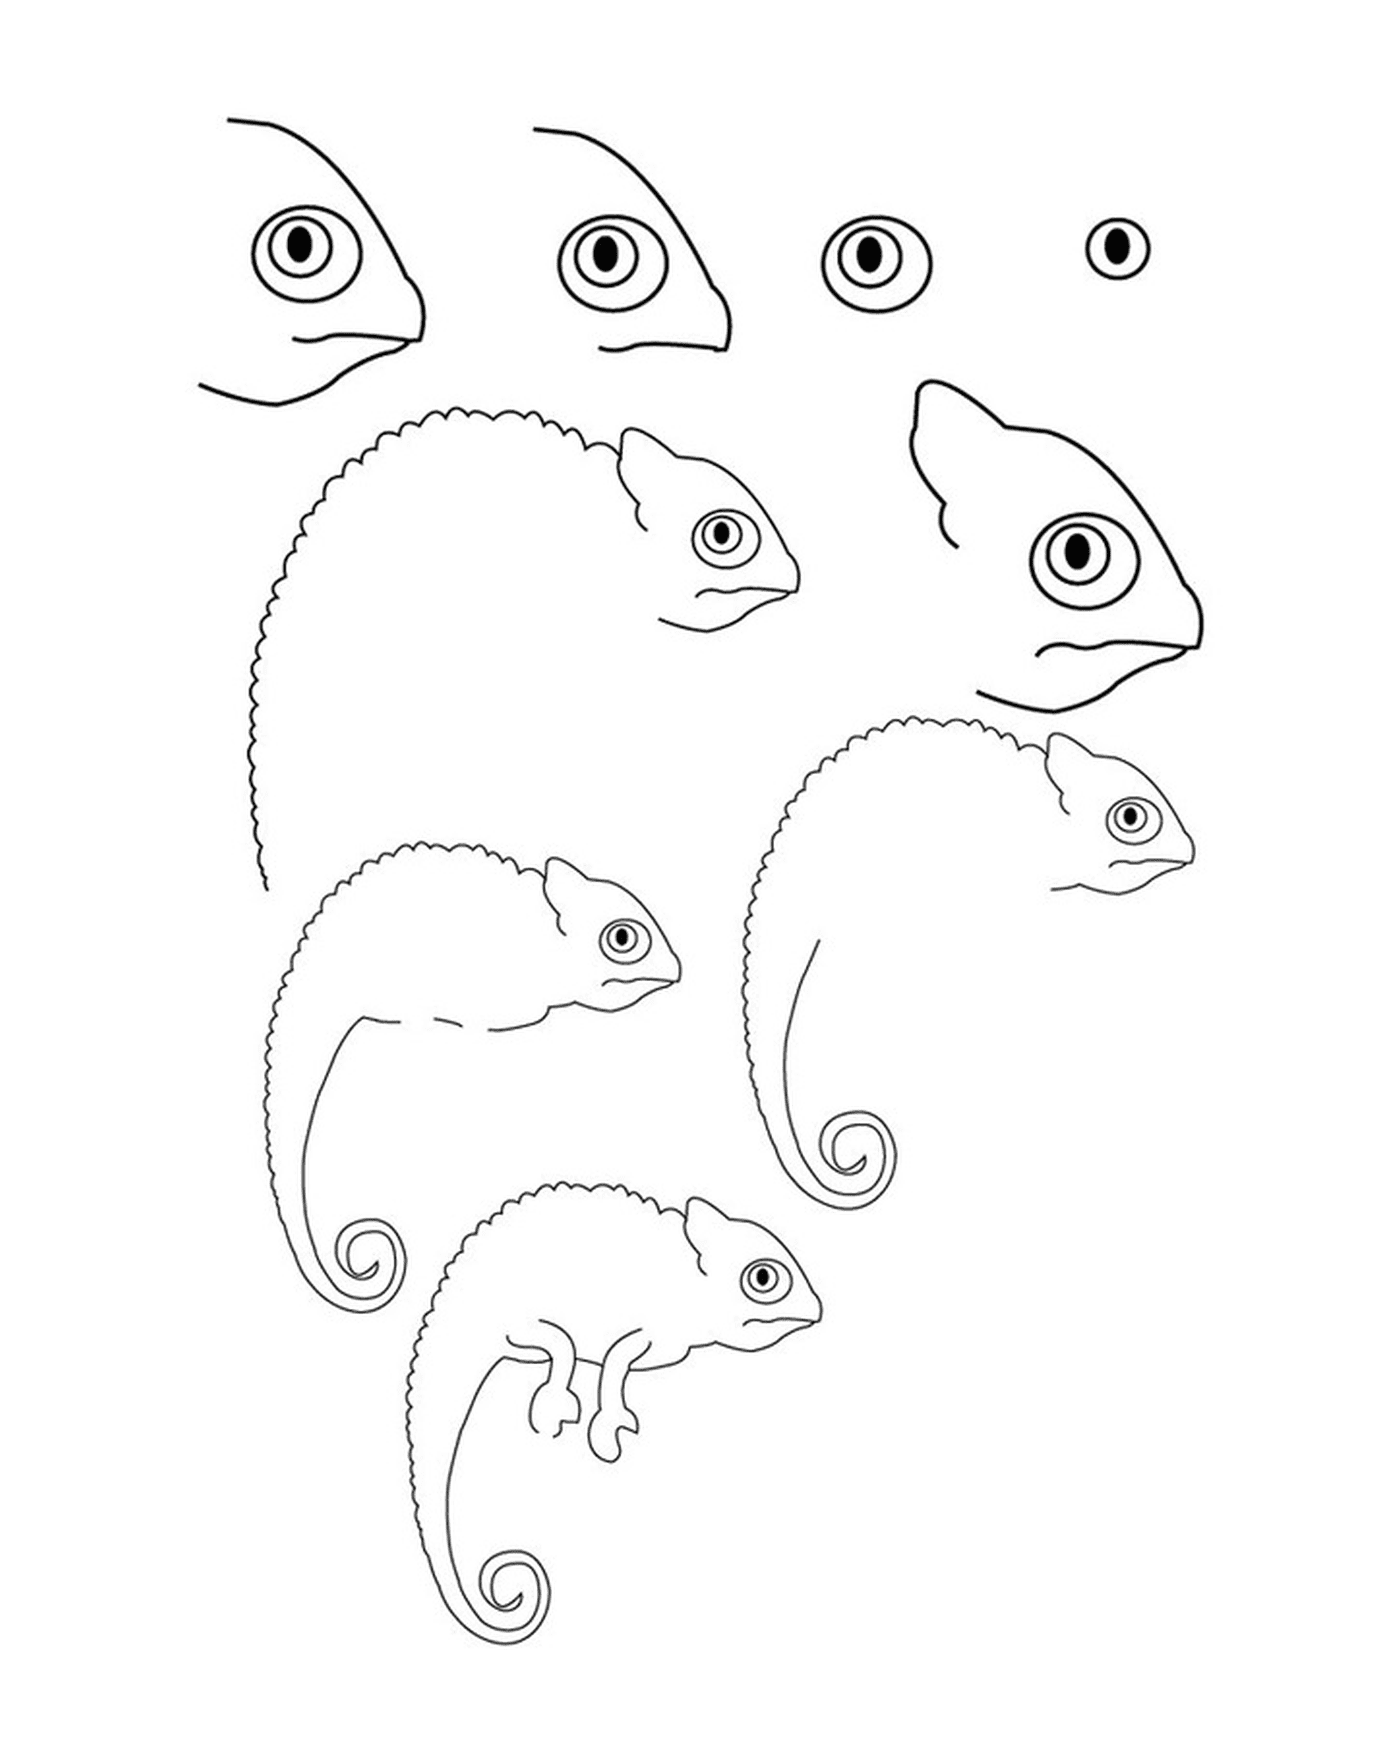  Como desenhar um camaleão 